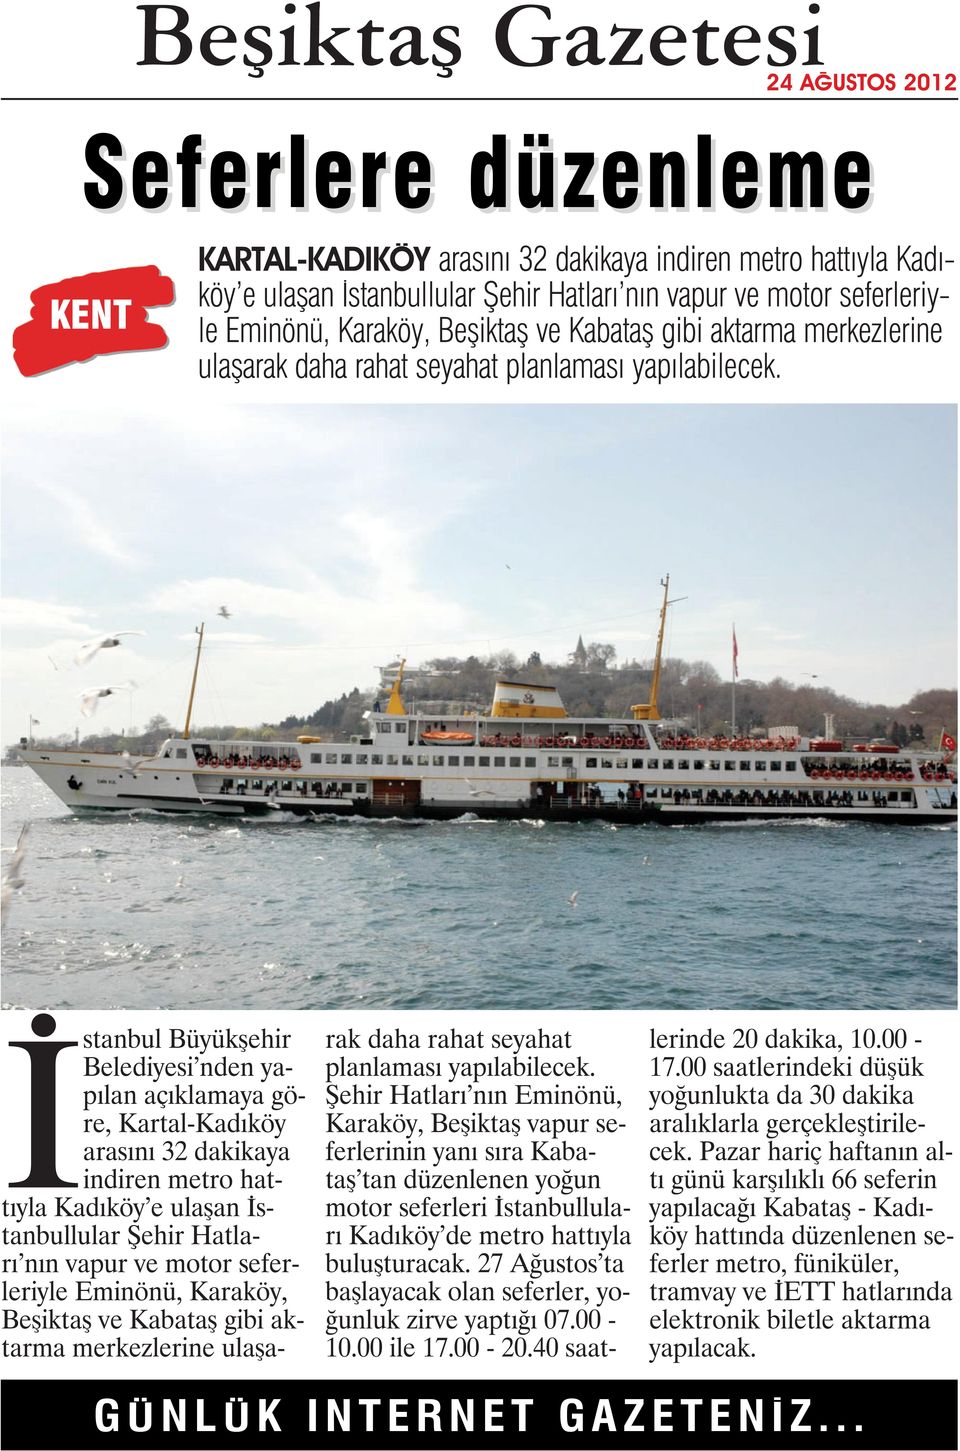 İstanbul Büyükşehir Belediyesi nden yapılan açıklamaya göre, Kartal-Kadıköy arasını 32 dakikaya indiren metro hattıyla Kadıköy e ulaşan İstanbullular Şehir Hatları nın vapur ve motor seferleriyle